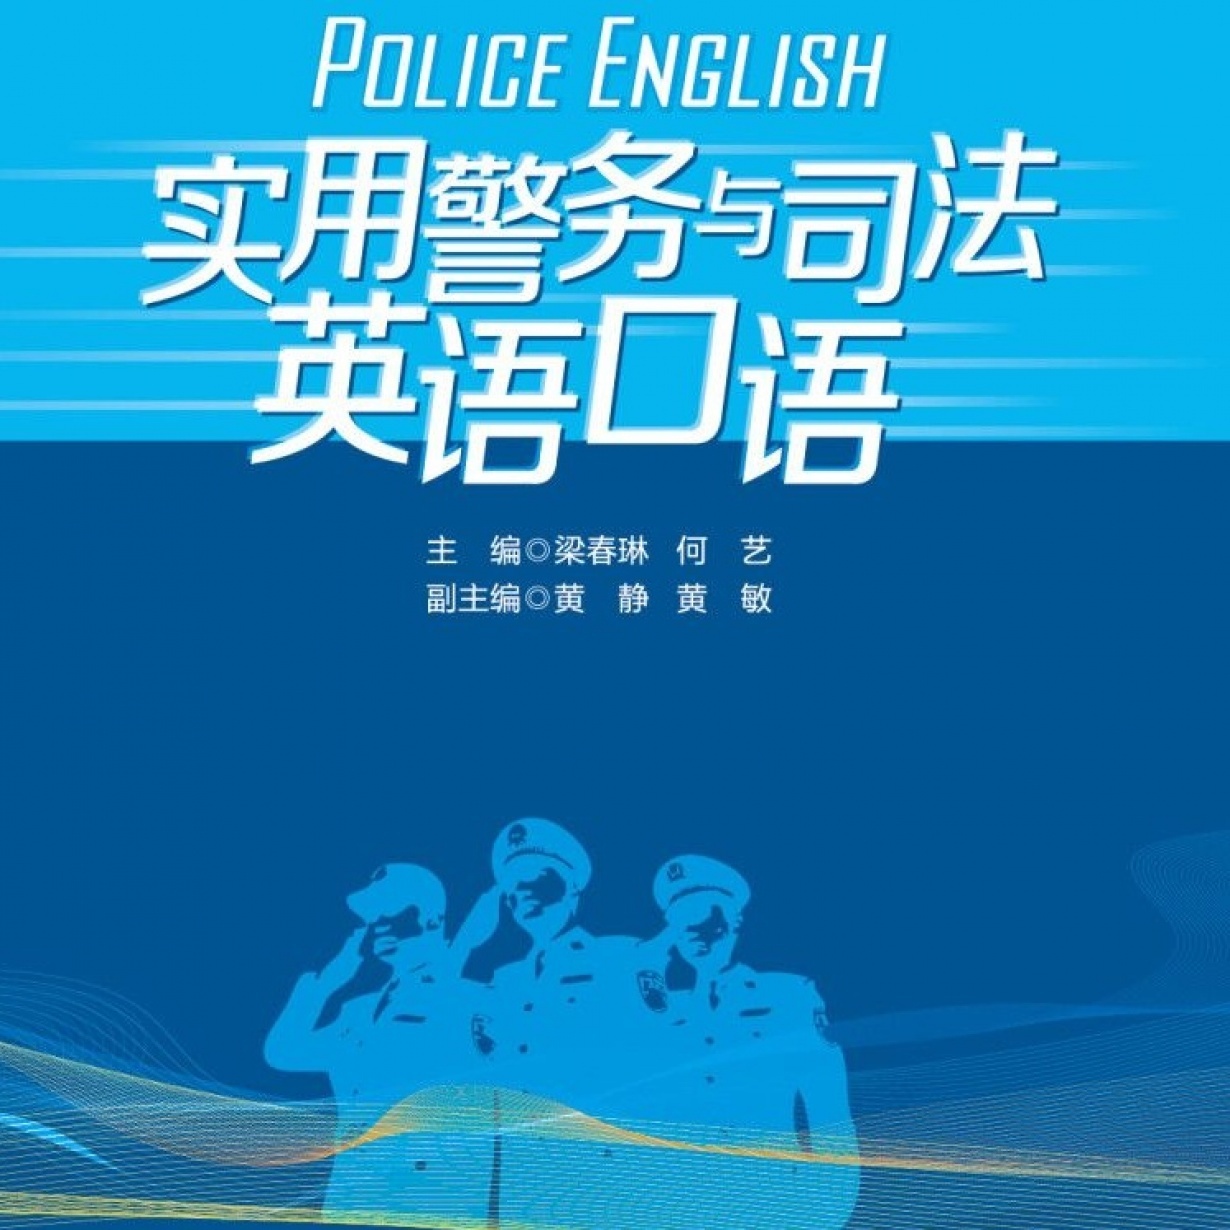 实用警务英语与司法英语口语【配套音频】.mp3